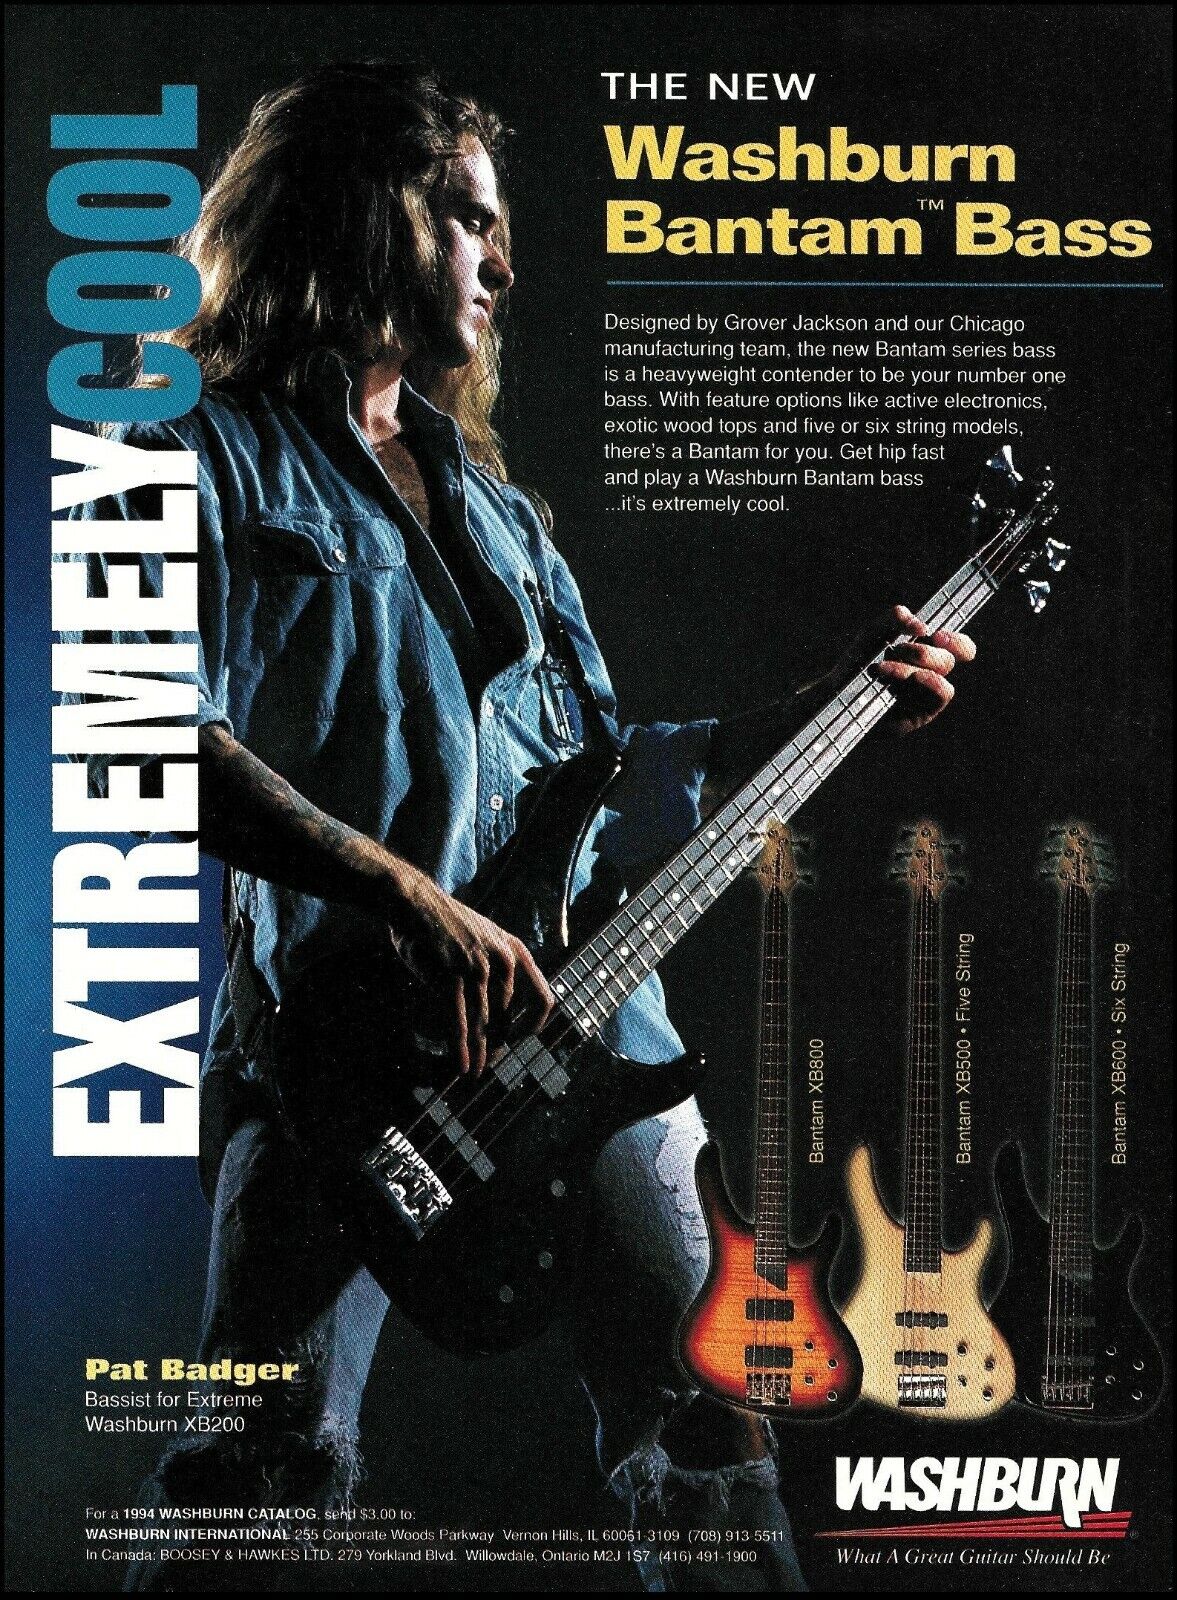 Extreme band Pat Badger 1994 Washburn XB200 Bantam Bass guitar series ad print